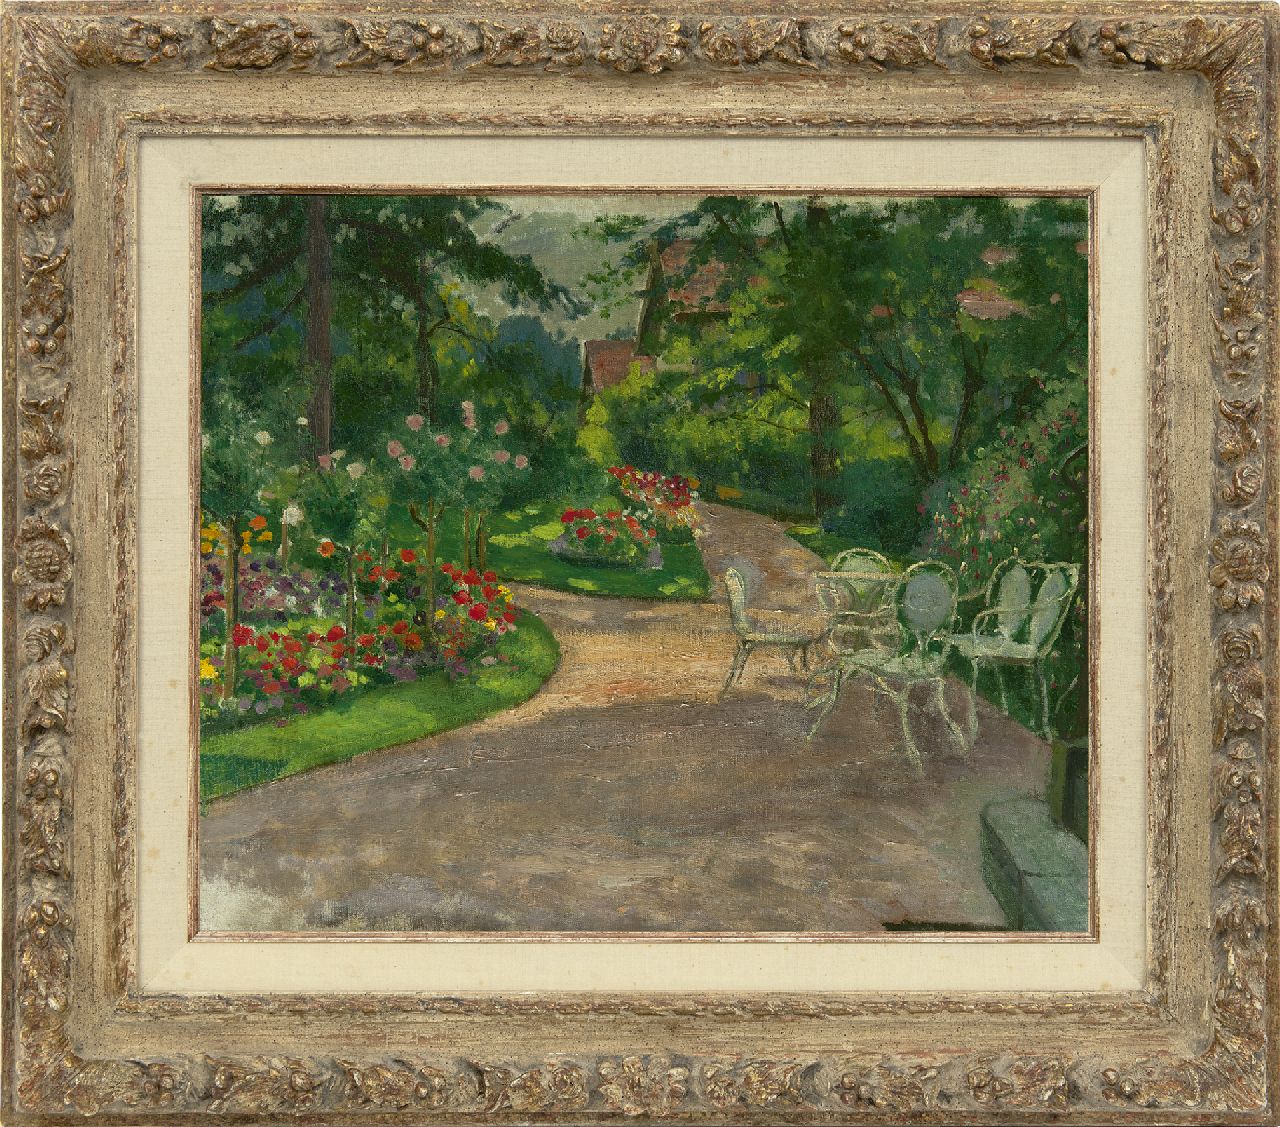 Sachsen M.M.A. von | Mathilde Marie Auguste von Sachsen, Garten im Sommer, Öl auf Leinwand 46,3 x 56,2 cm